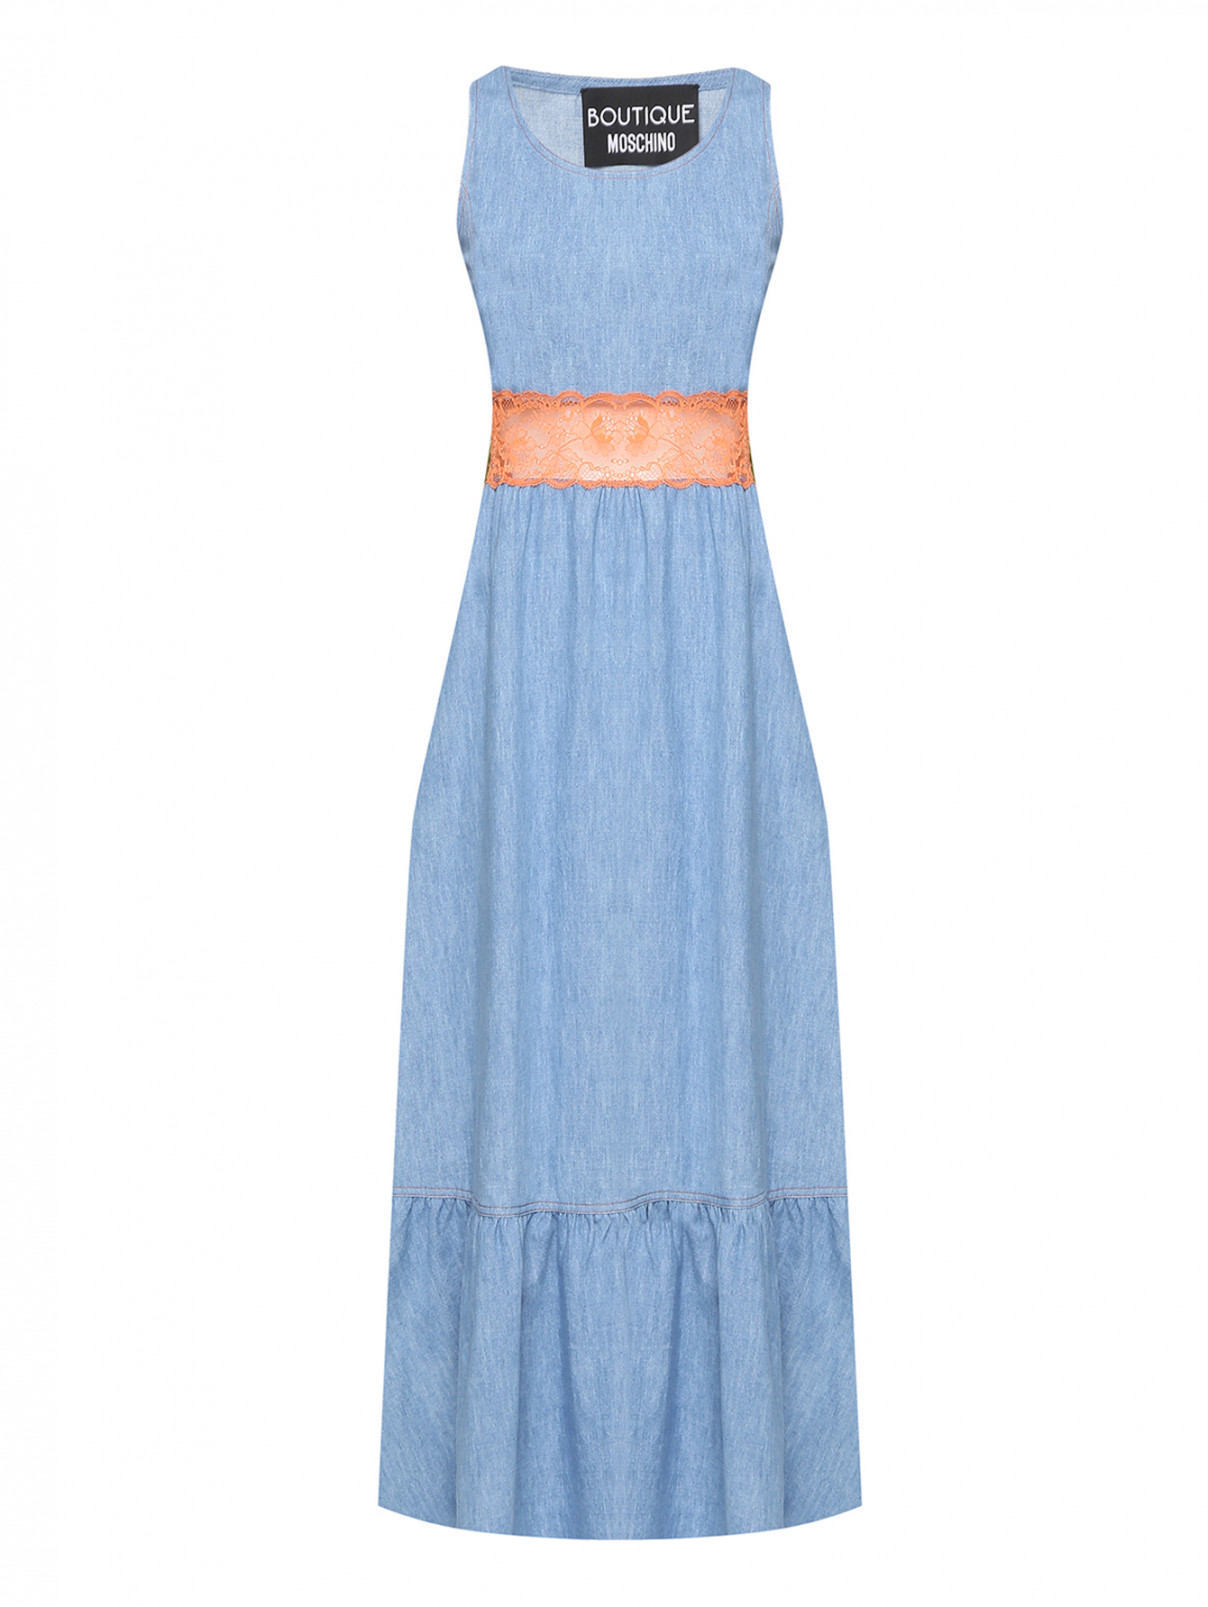 Платье из денима с кружевной отделкой и карманами Moschino Boutique  –  Общий вид  – Цвет:  Синий